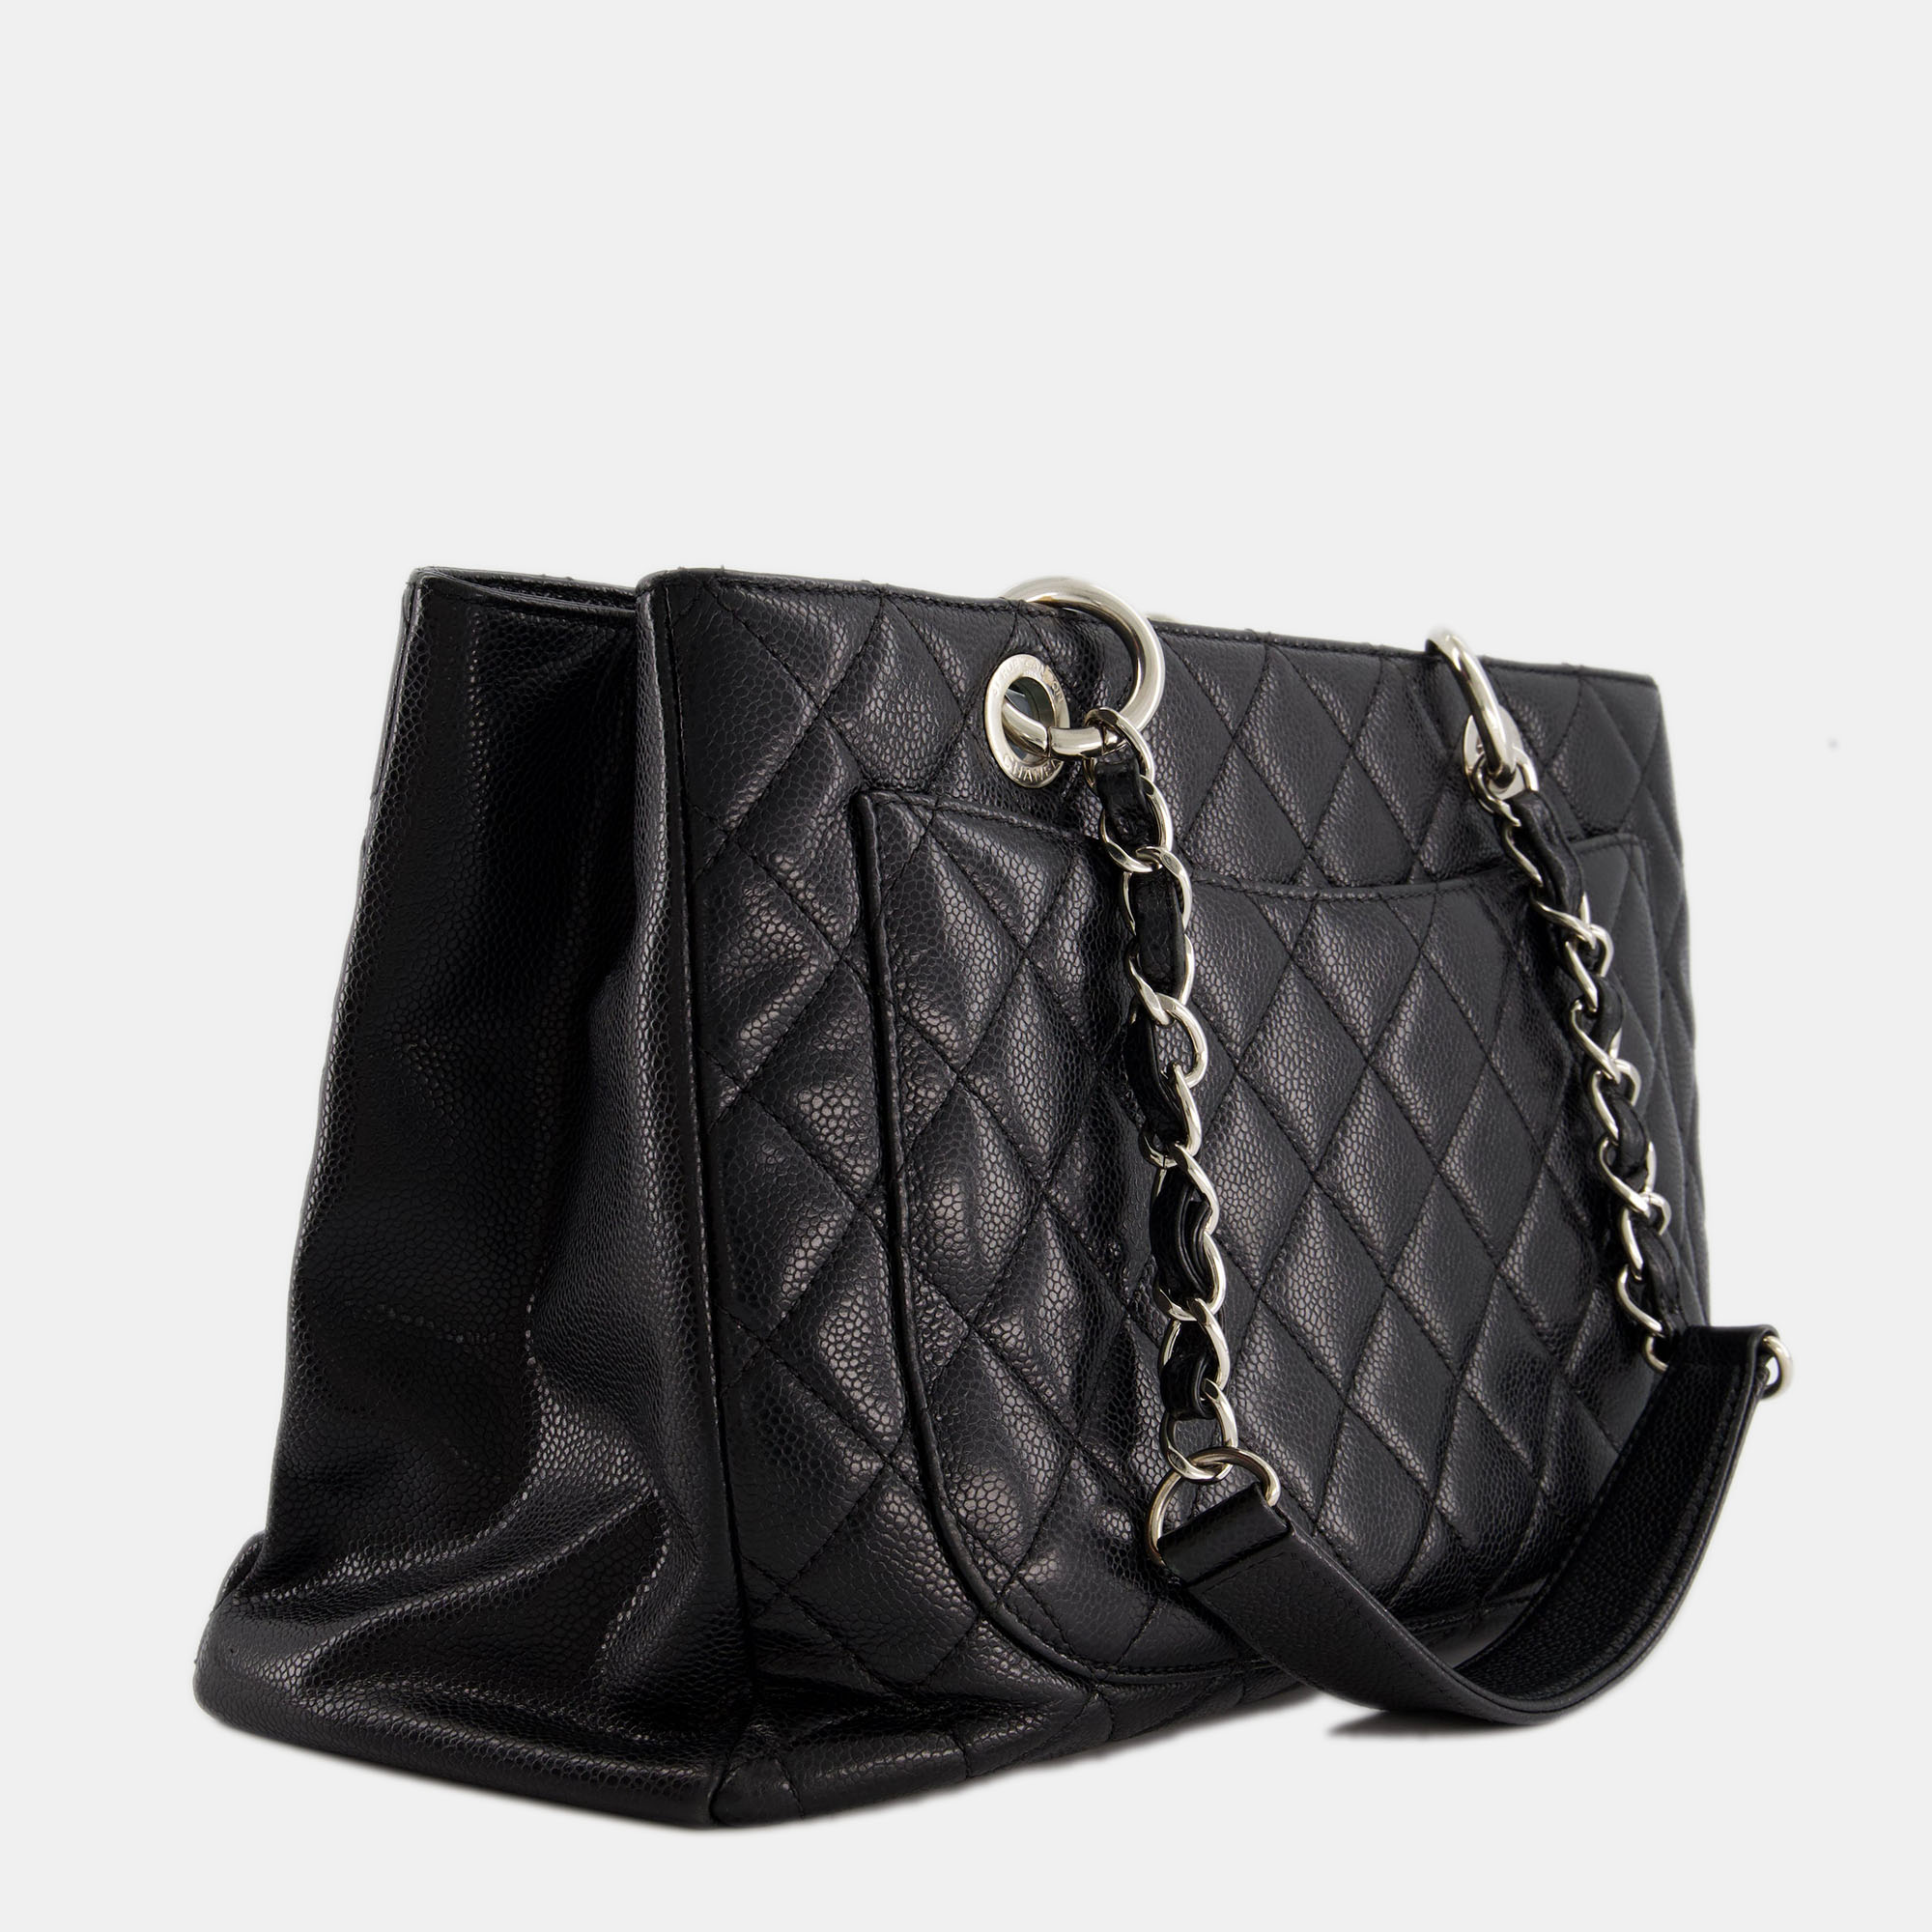 

Chanel Black Caviar GST Grand Shopper Tote Bag With Silver Hardware